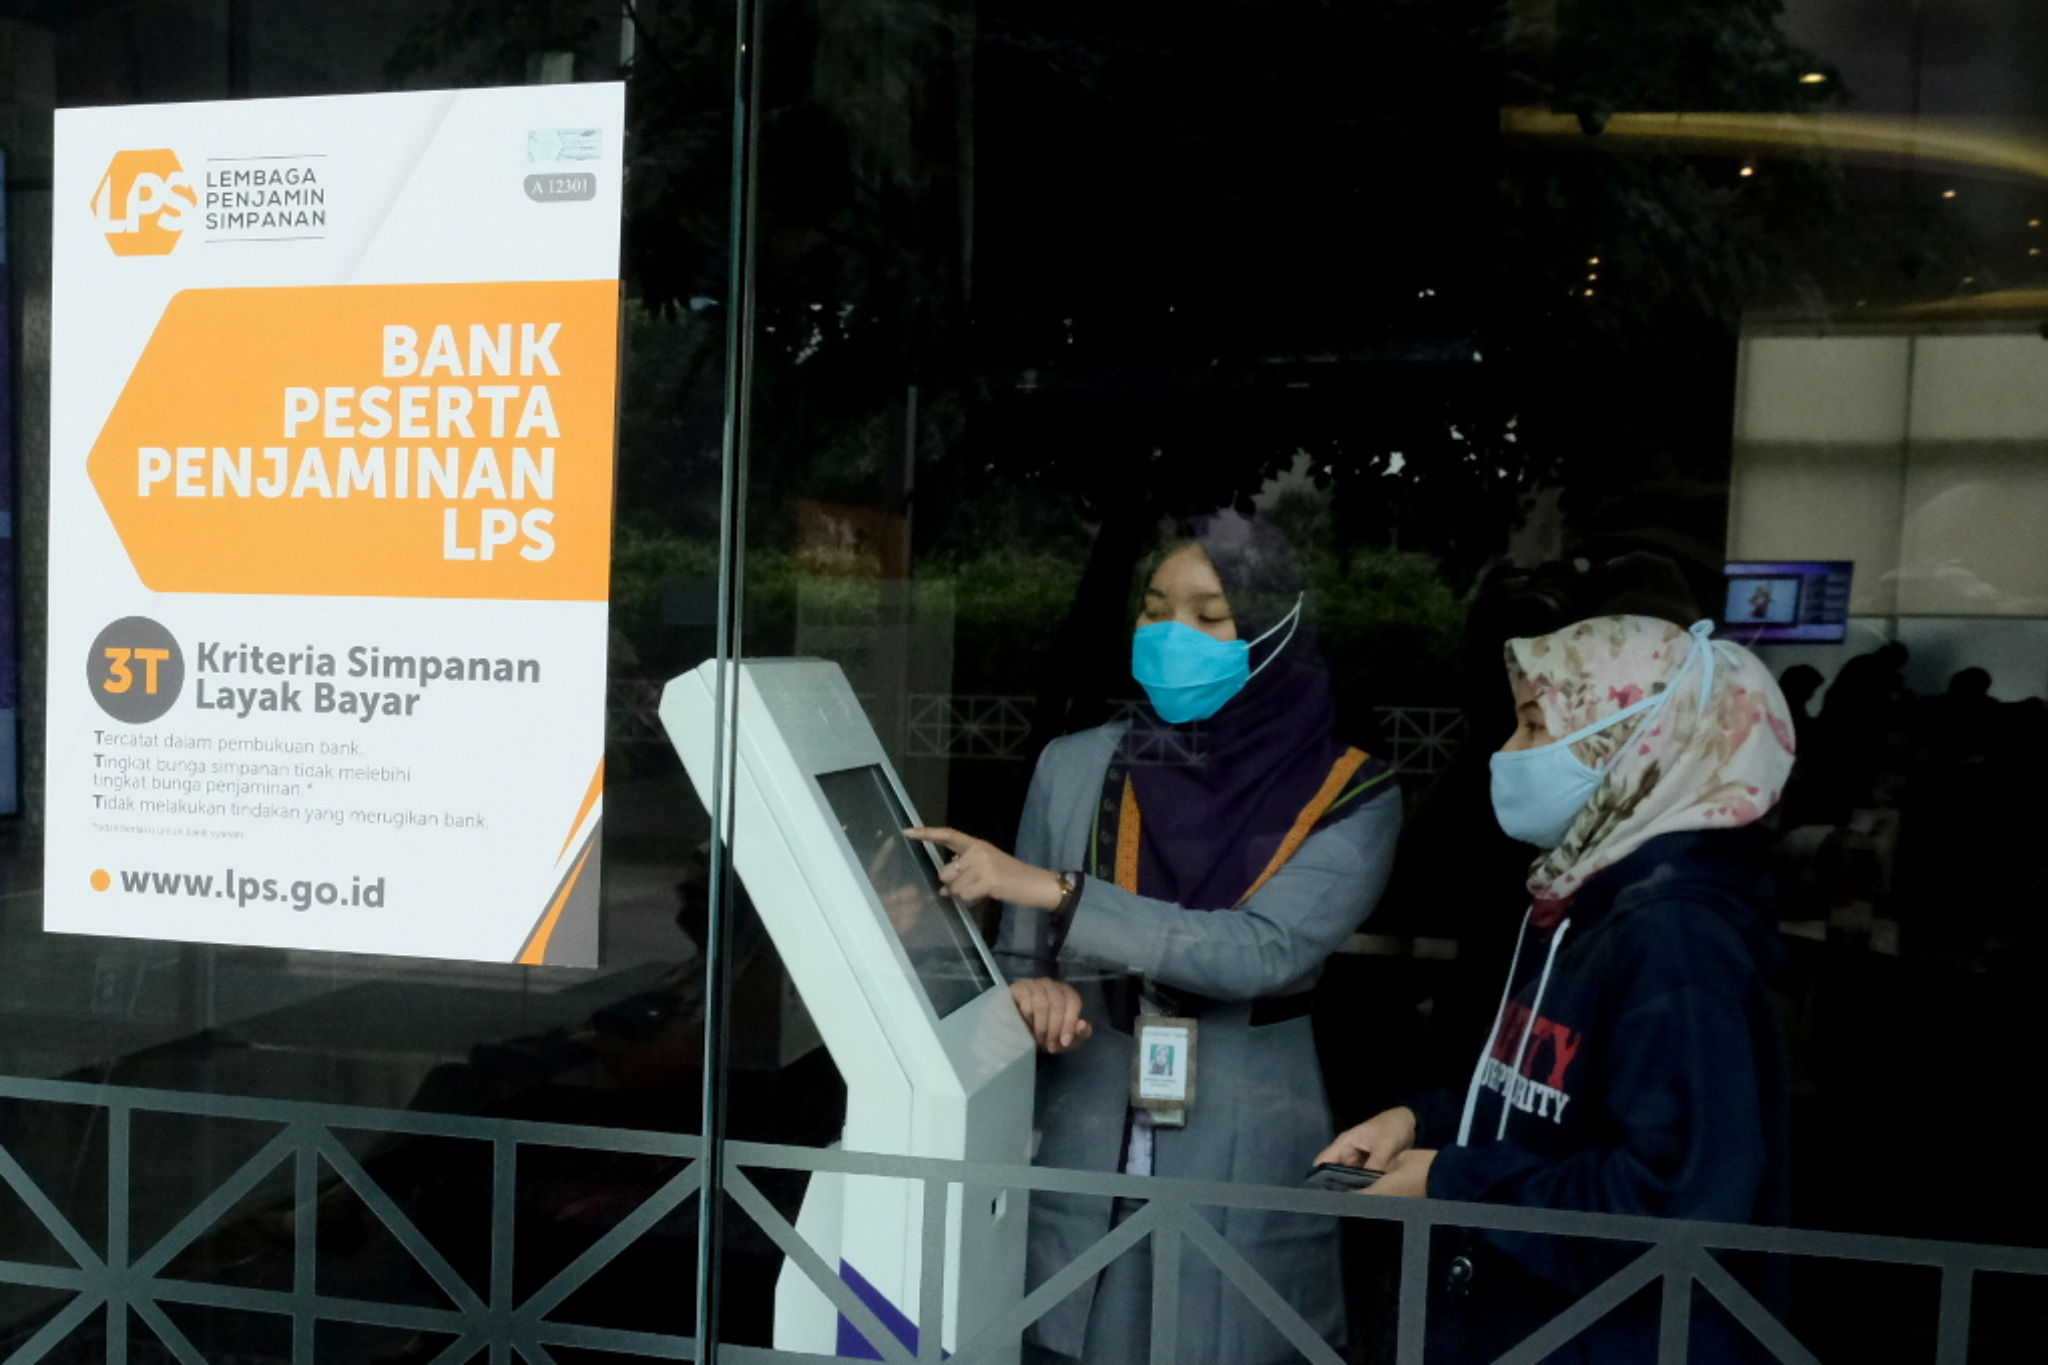 <p>Karyawan melayani nasabah di salah satu bank peserta penjaminan LPS di Jakarta, Jum&#8217;at, 5 Maret 2021. Foto: Ismail Pohan/TrenAsia</p>
